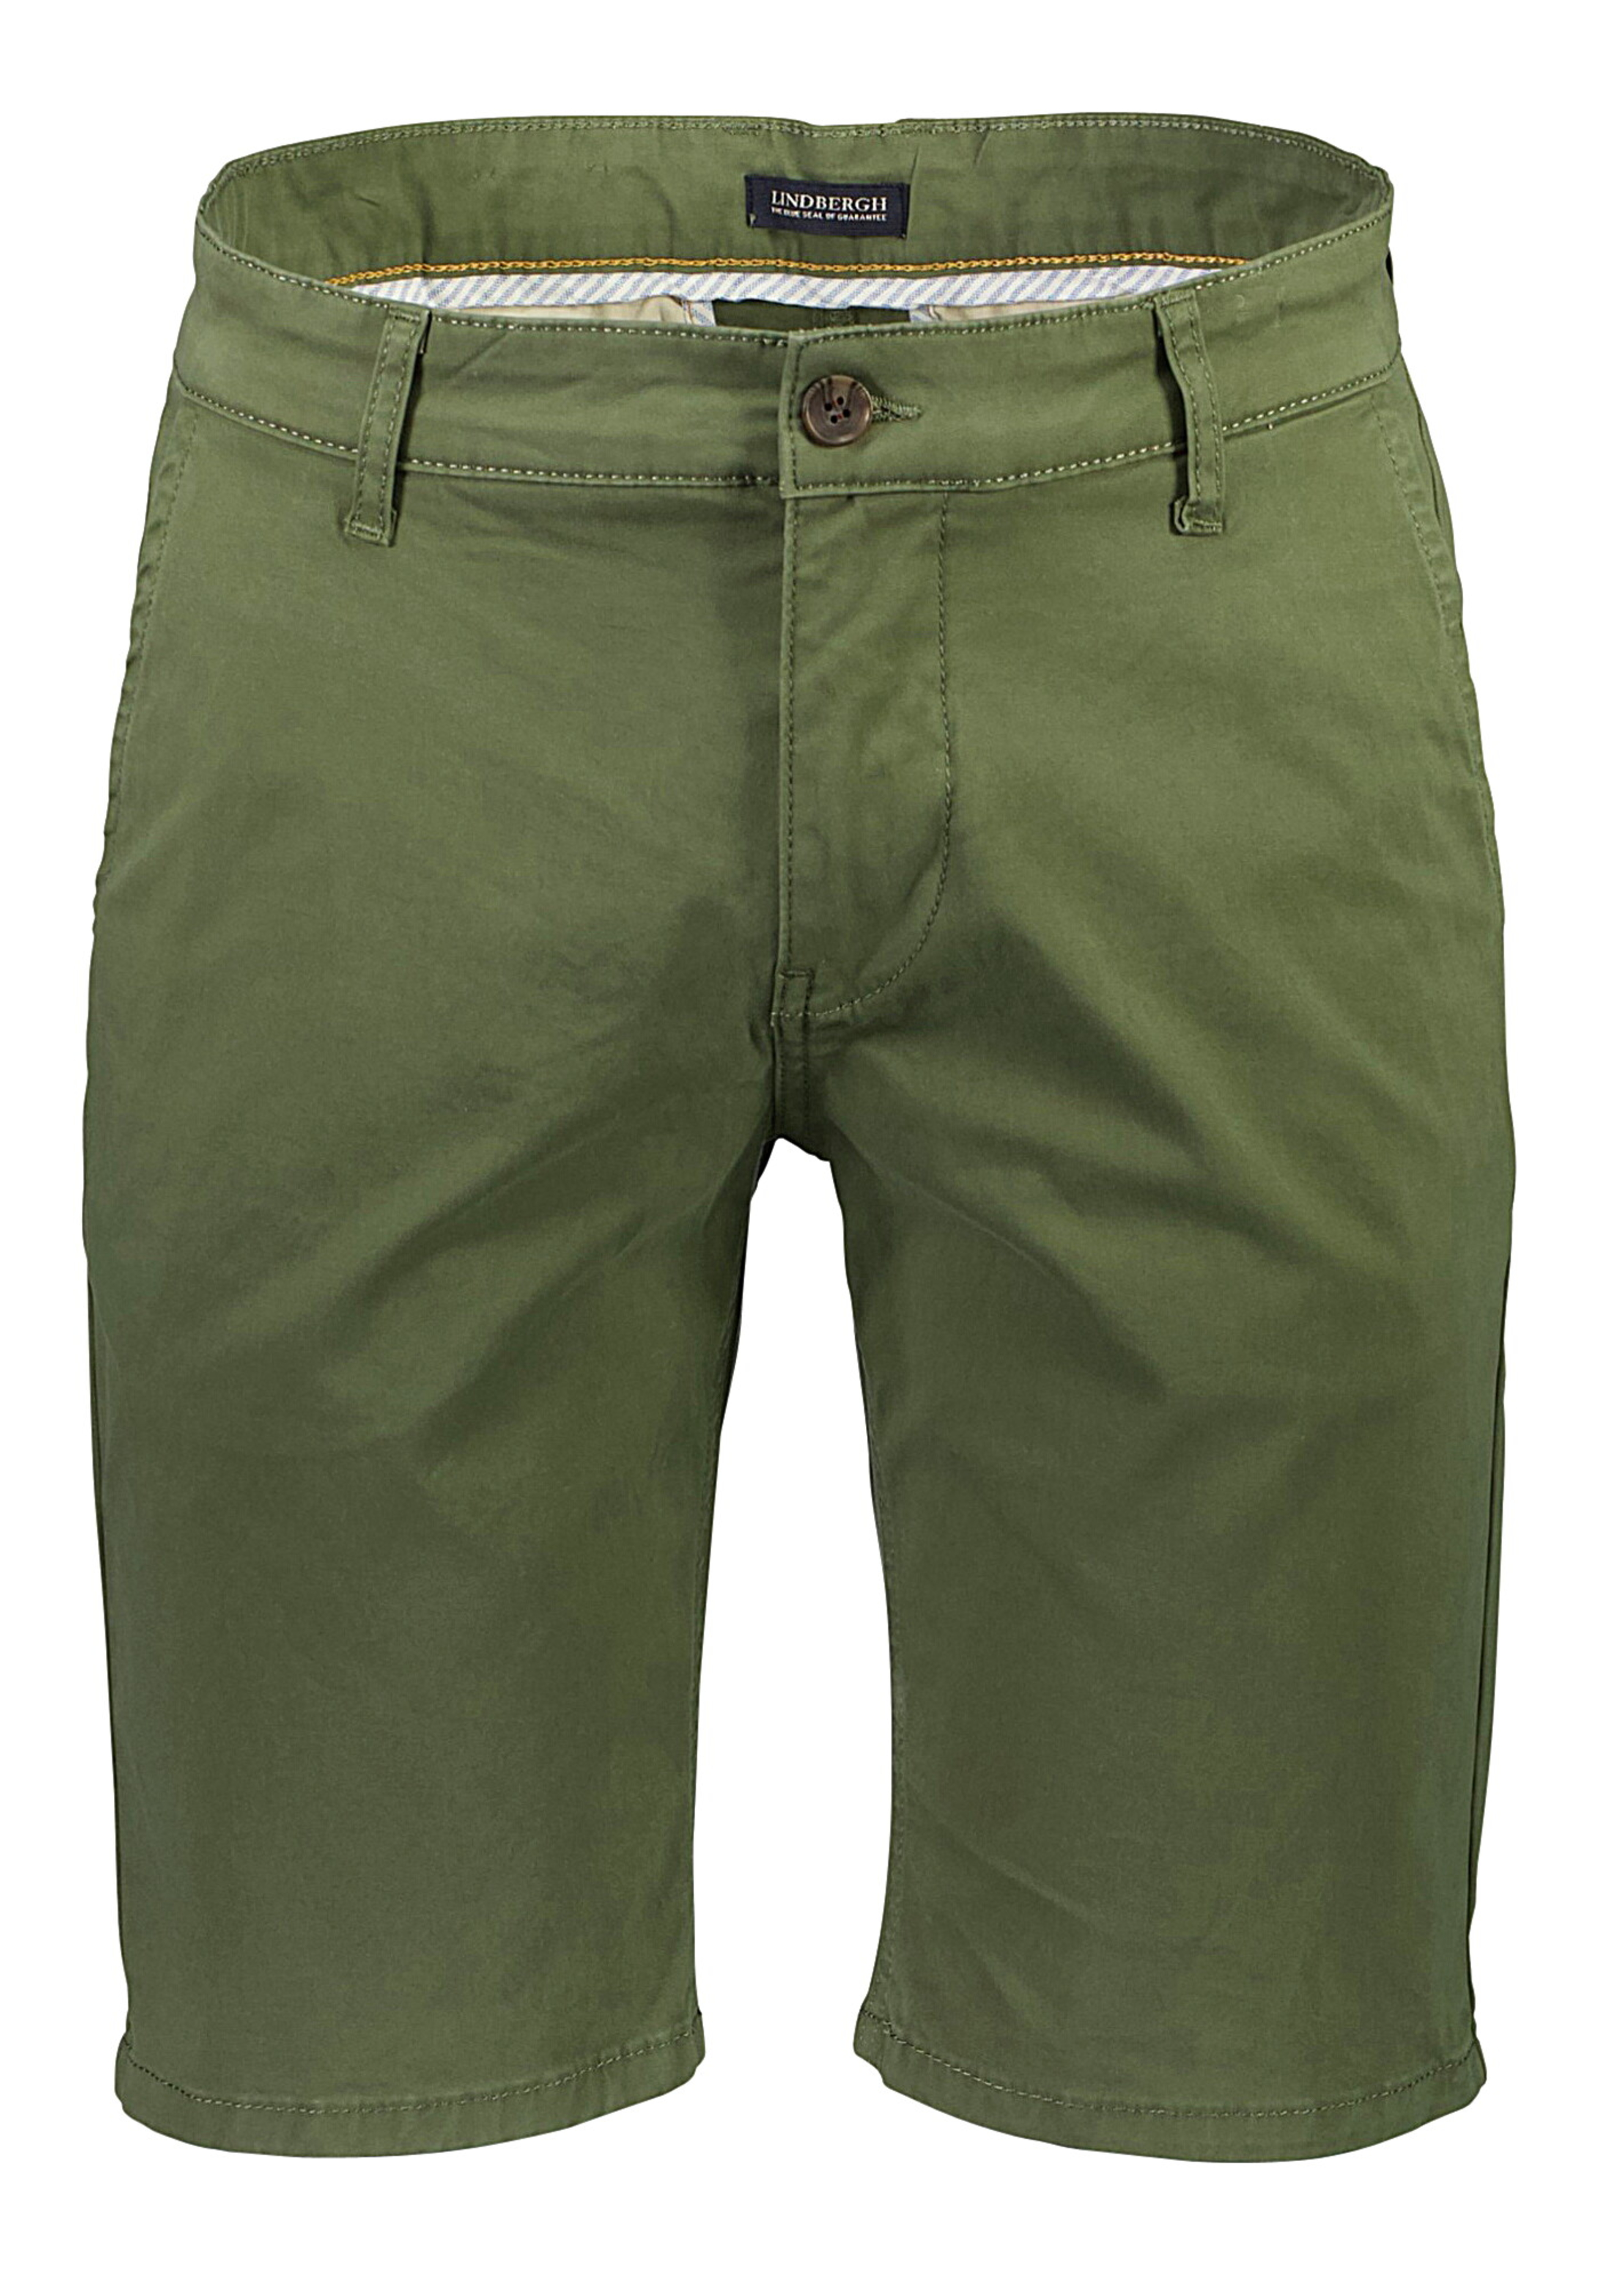 Lindbergh Chino shorts green / army